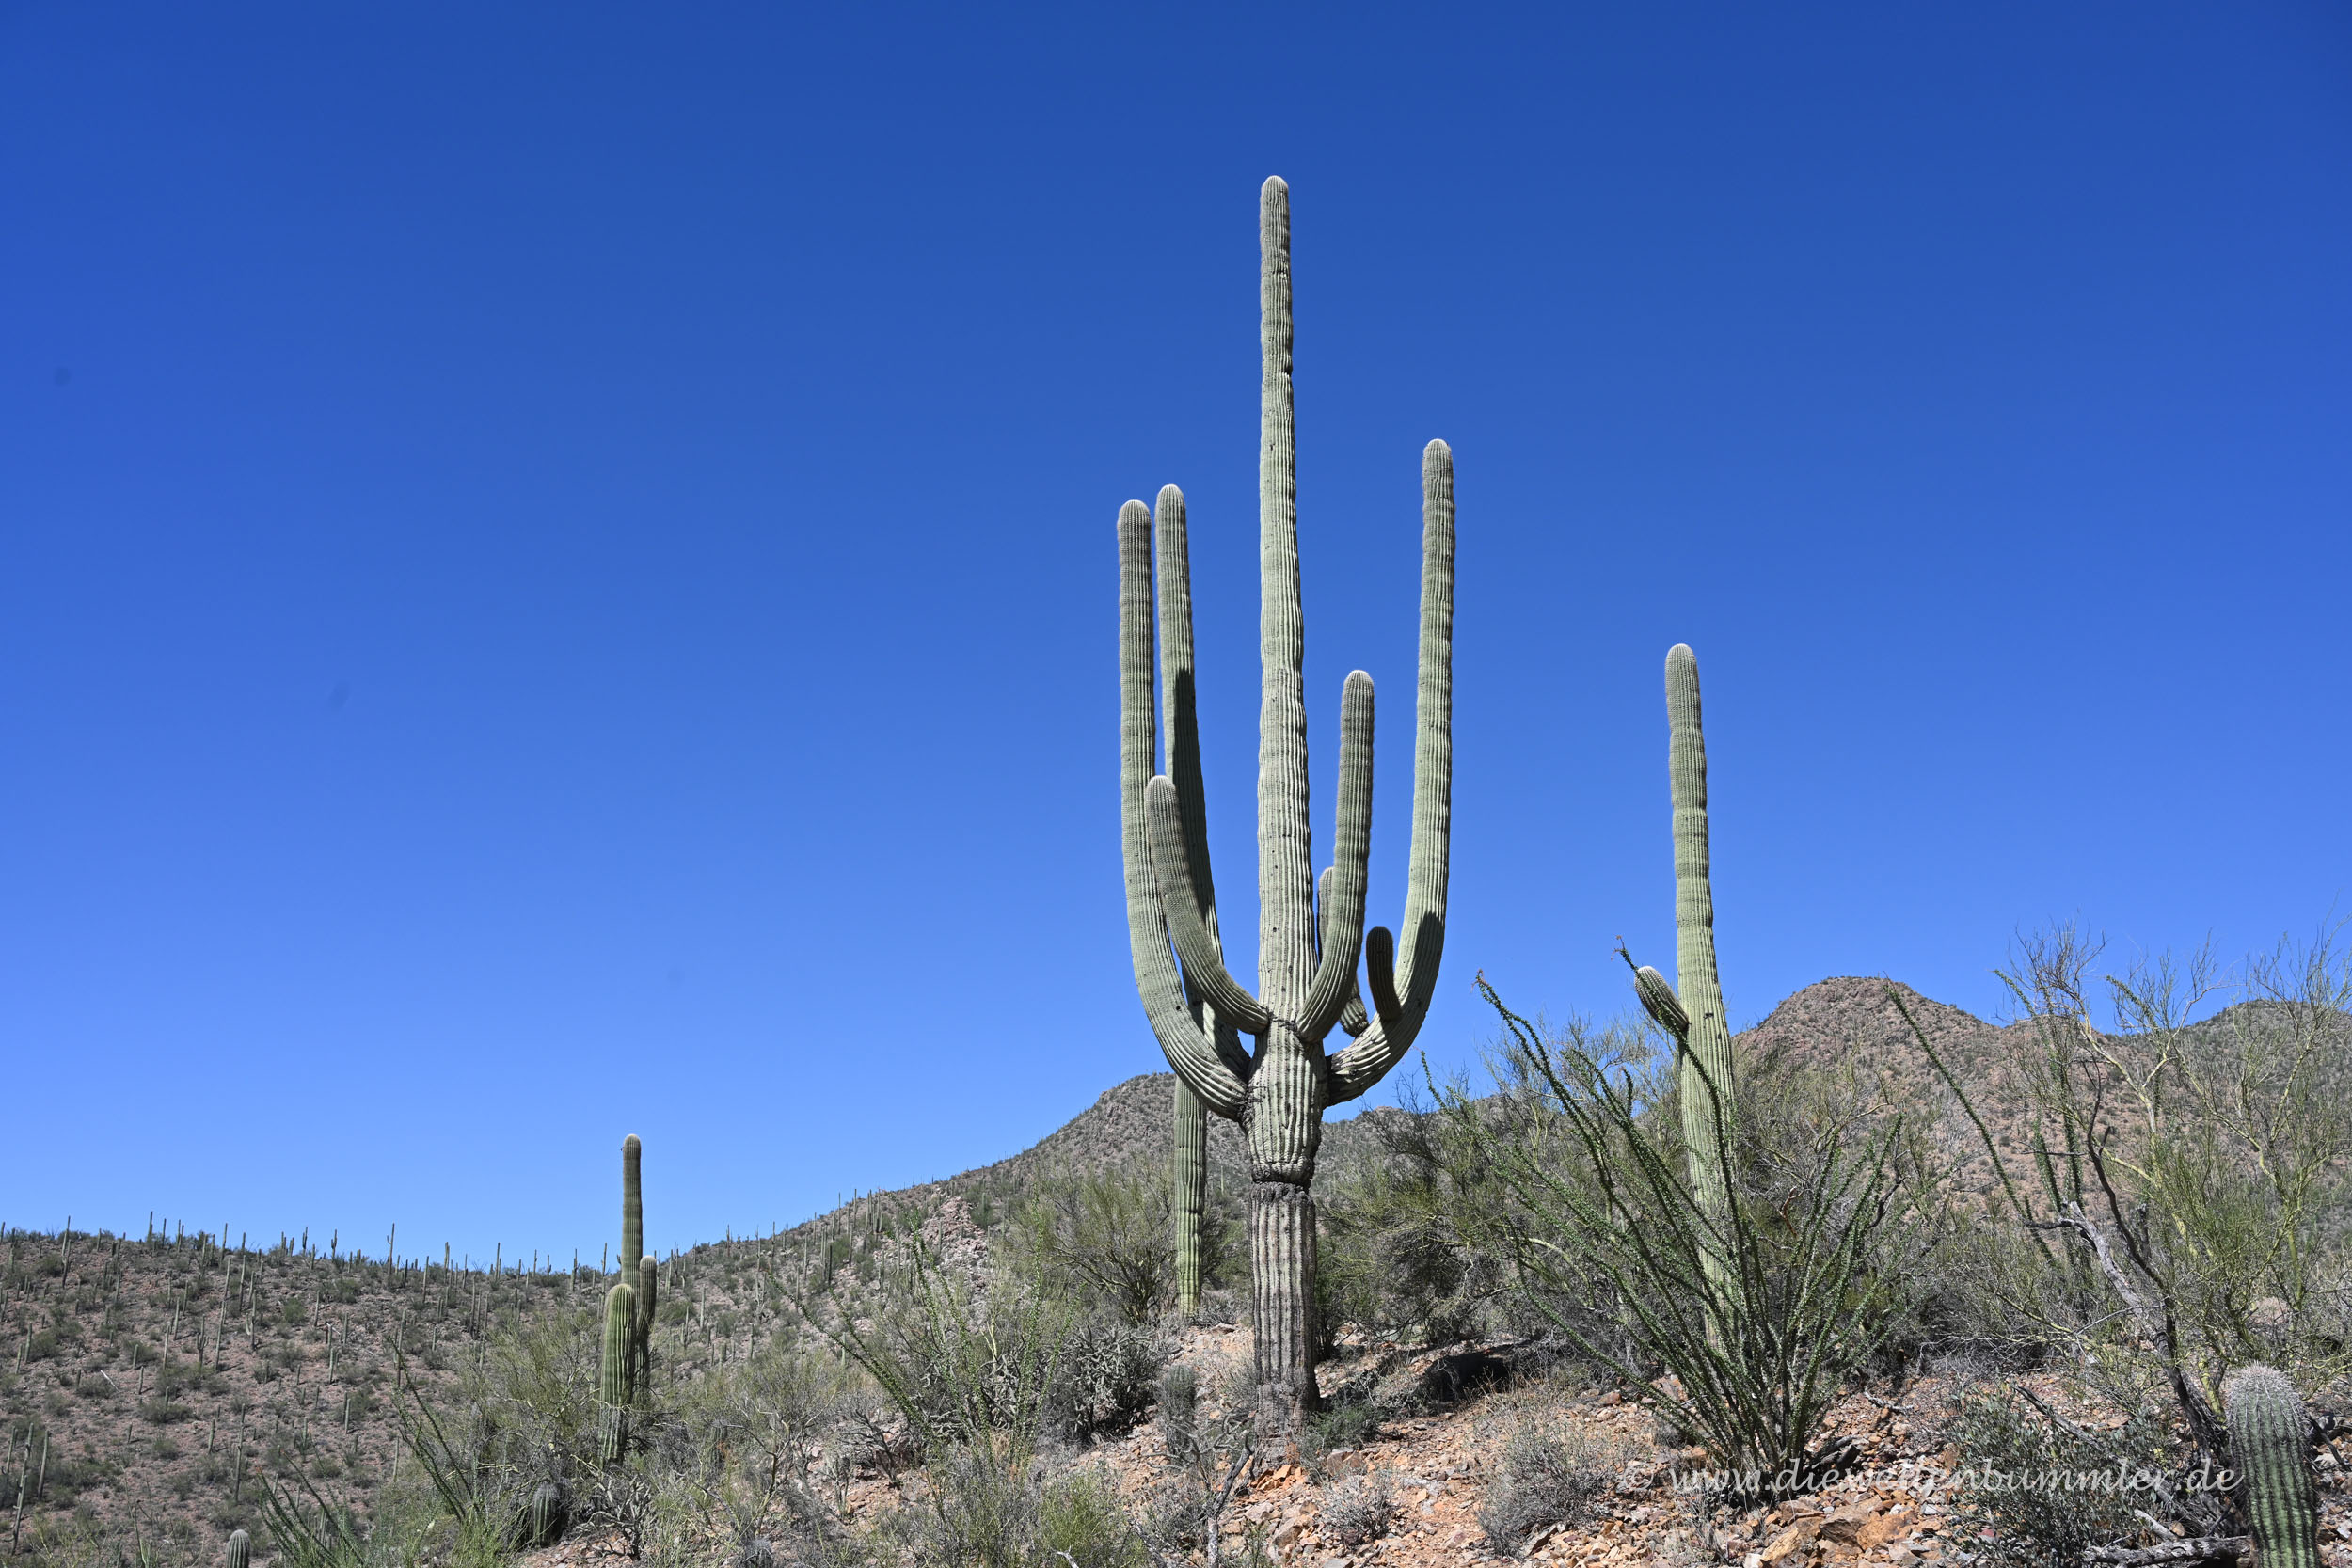 Kaktus mit mehreren Armen